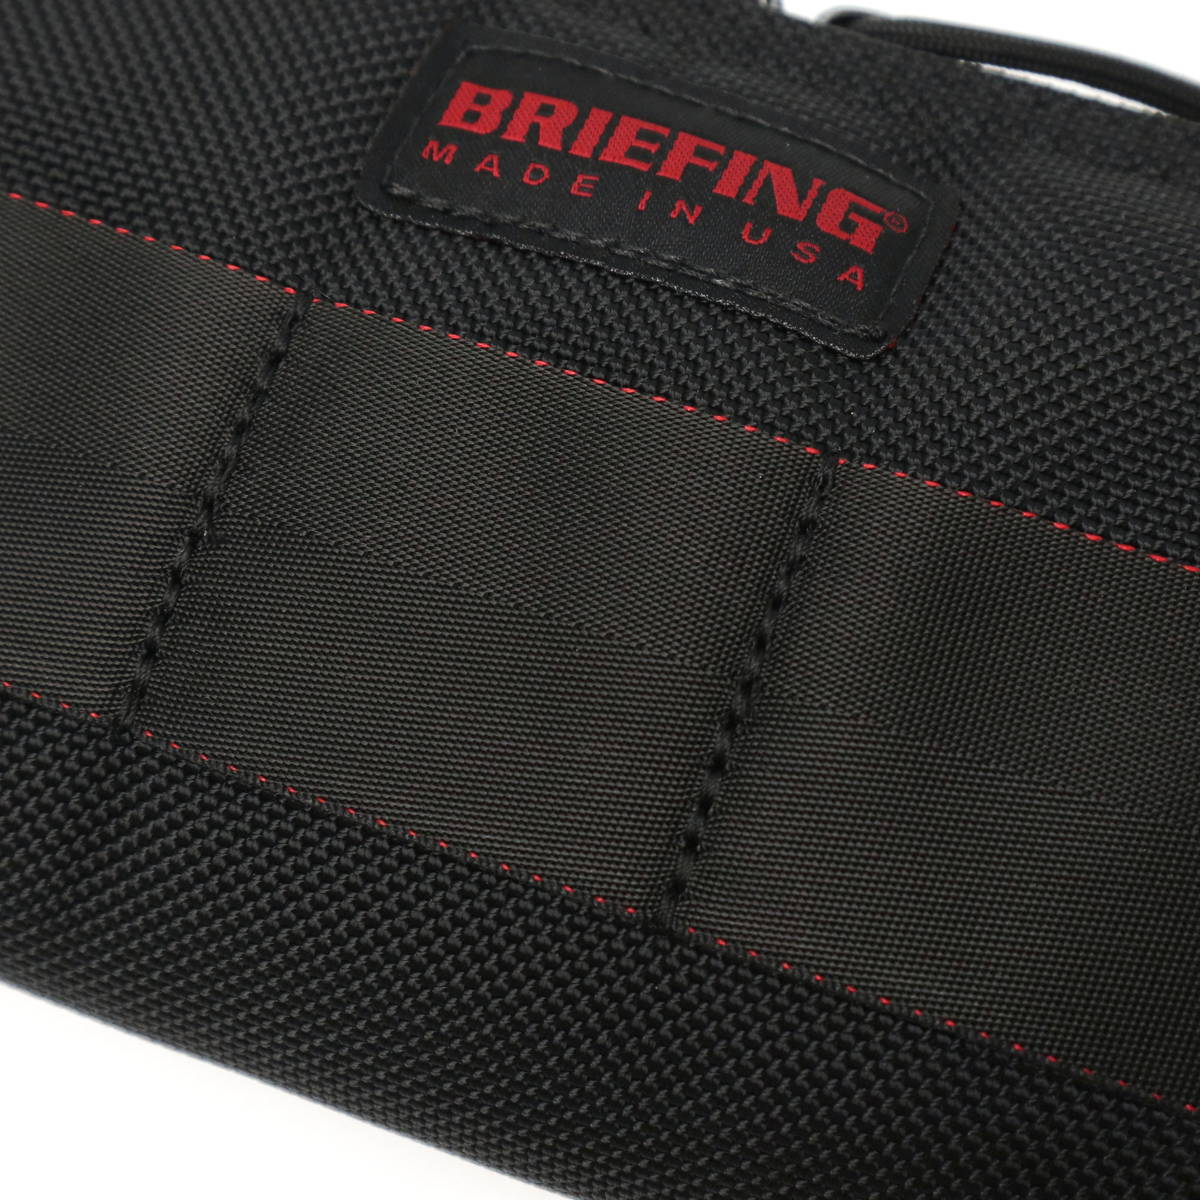 【日本正規品】BRIEFING ブリーフィング MADE IN USA MOBILE POUCH M モバイルポーチ BRA213A03